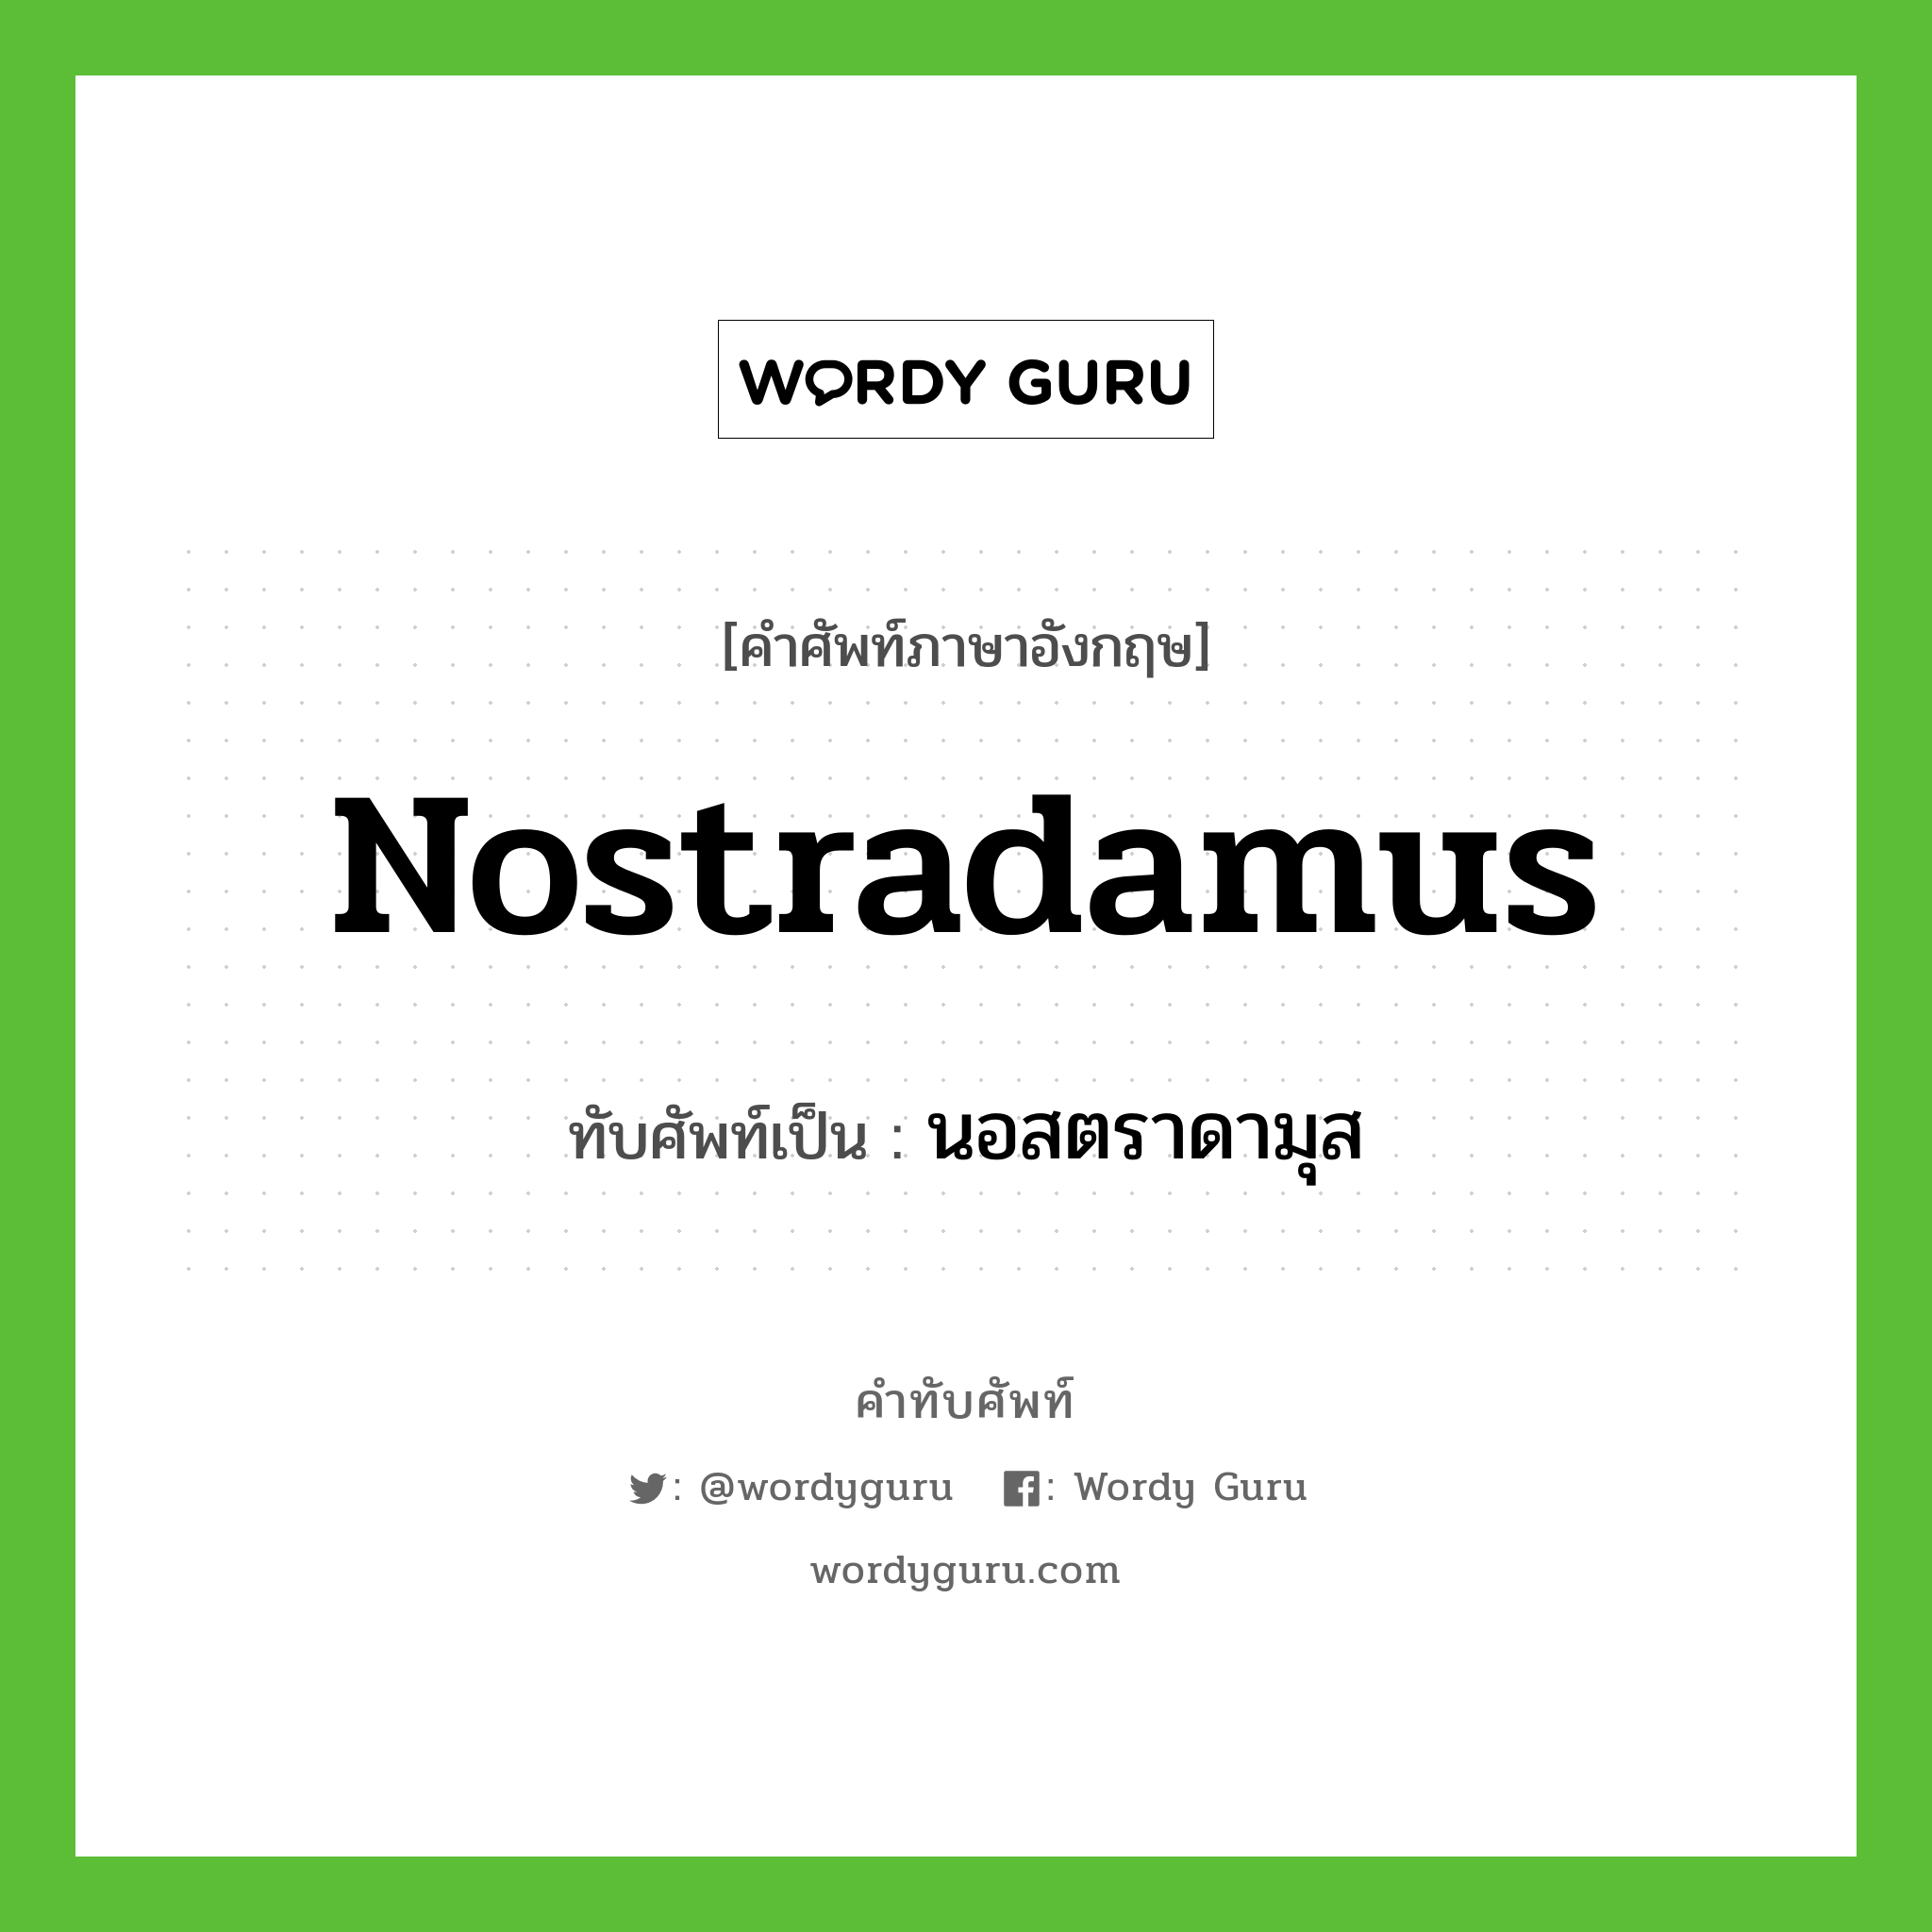 นอสตราดามุส เขียนอย่างไร?, คำศัพท์ภาษาอังกฤษ นอสตราดามุส ทับศัพท์เป็น Nostradamus